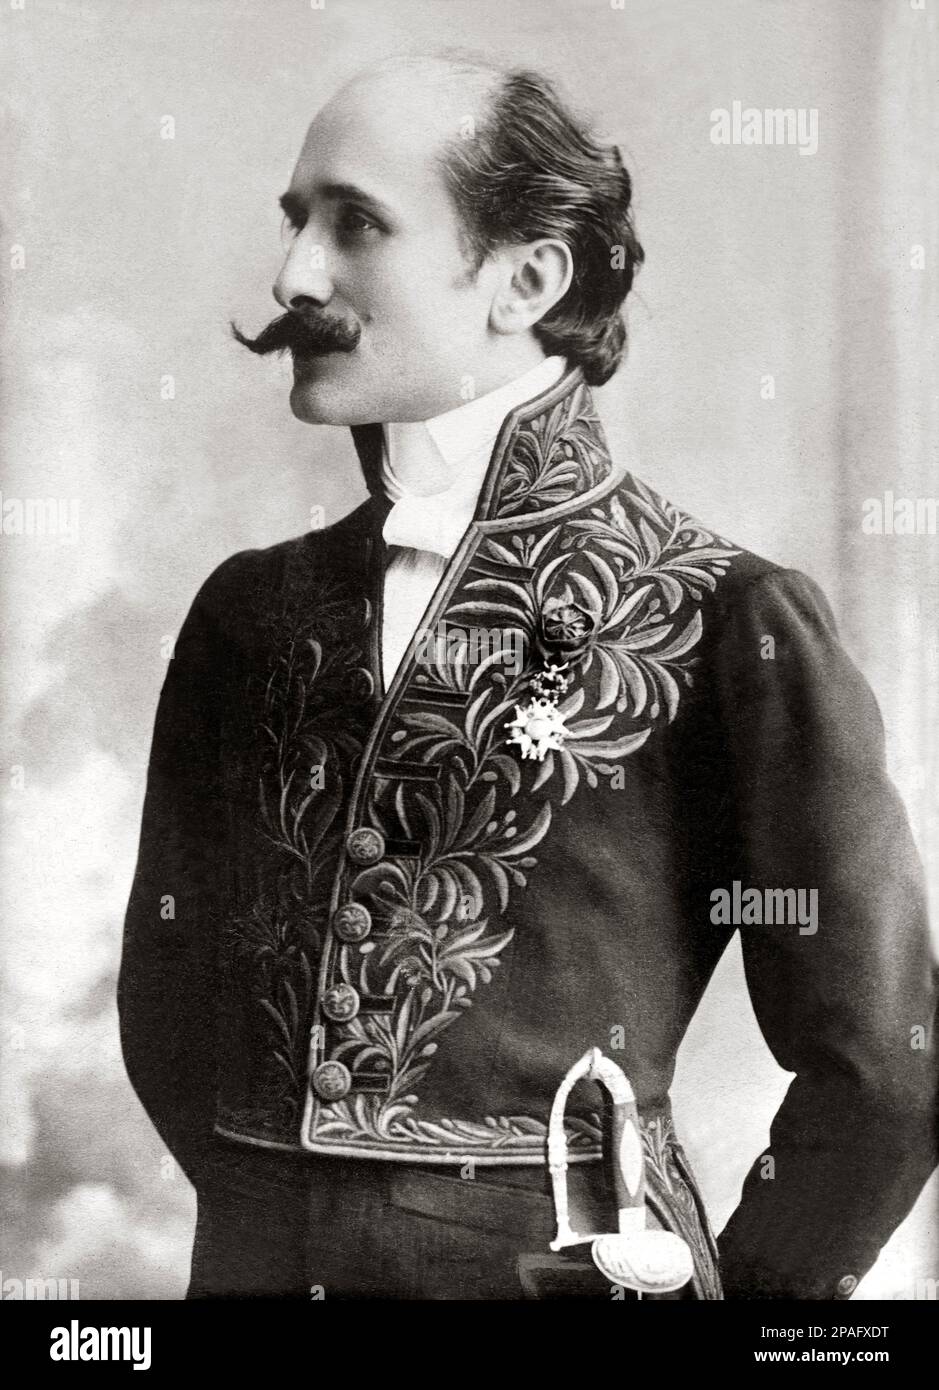 1910 , París , Francia : El escritor y dramaturgo francés EDMOND ROSTAND ( 1868 - 1918 ), vestido con uniforme de LA ACADEMIA FRANCESA , Autor de la obra L' AIGLON para Sarah Bernhardt - OTTOCENTO - BELLE EPOQUE - TEATRO - TEATRO - TEATRO - SCRITTORE - LETTERATO - LETTERATURA - LITERATURA - DRAMMATURGO - COMMEDIOGRAFO - dramaturgo - SIGLO XIX - PARIGI - PARÍS - baffi - bigote - corbata - cravatta - collar - Colletto - medallas - medaglia - medaglie - espada - espada - Academia de Francia - stempiato - stempiatura - cronometrado en los templos - profilo - perfil ---- ARCHIVO GBB Foto de stock